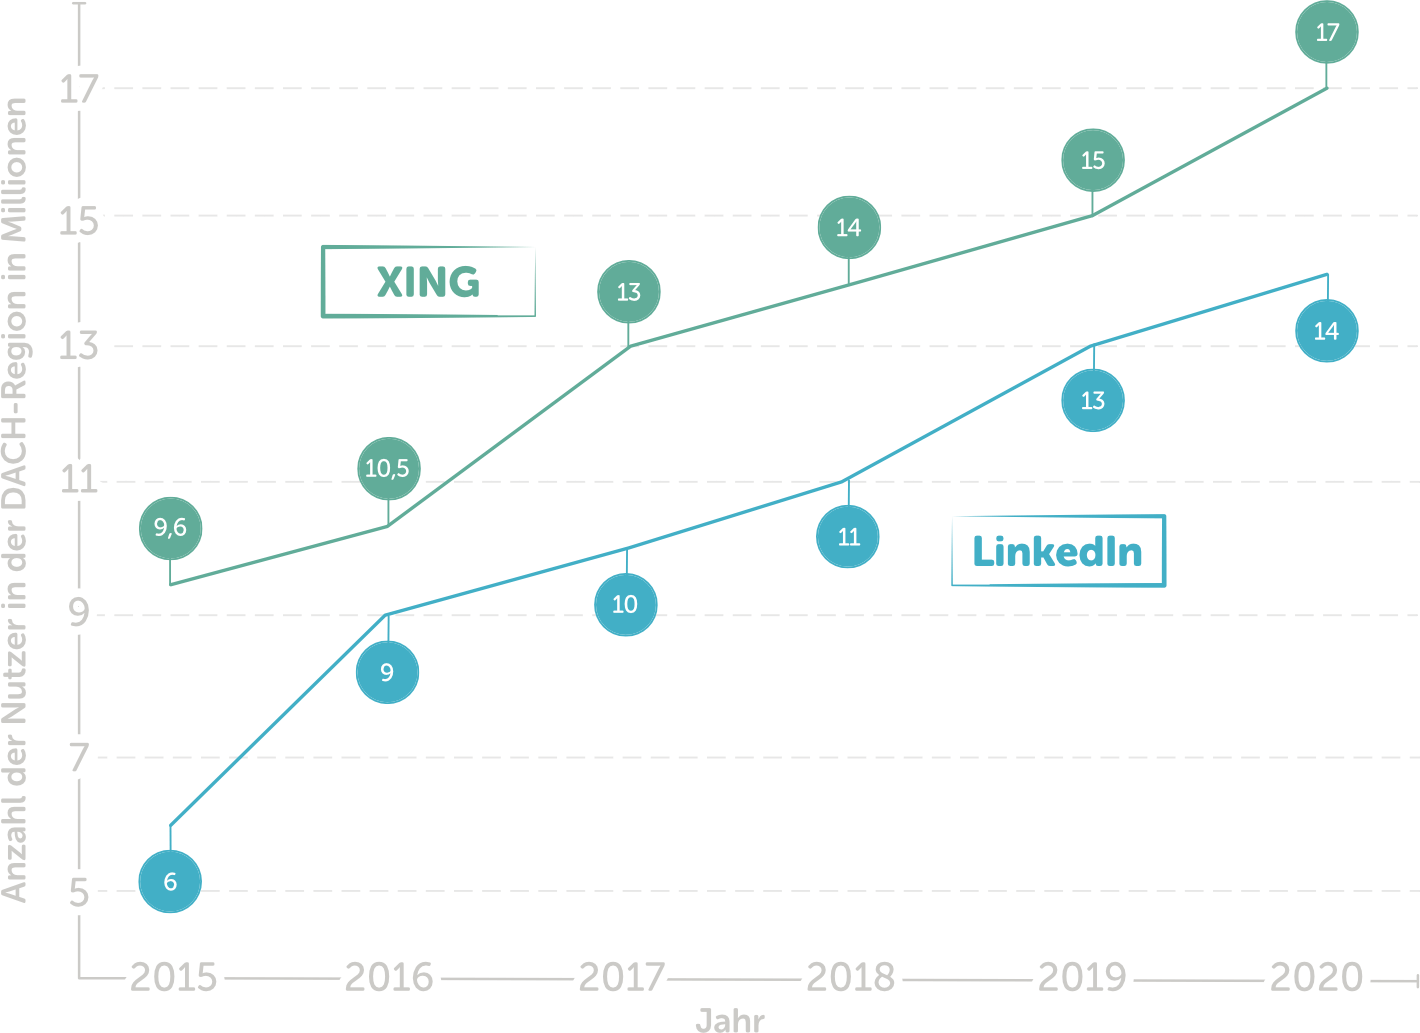 Linkedin Oder Xing Karrierenetzwerke Im Vergleich